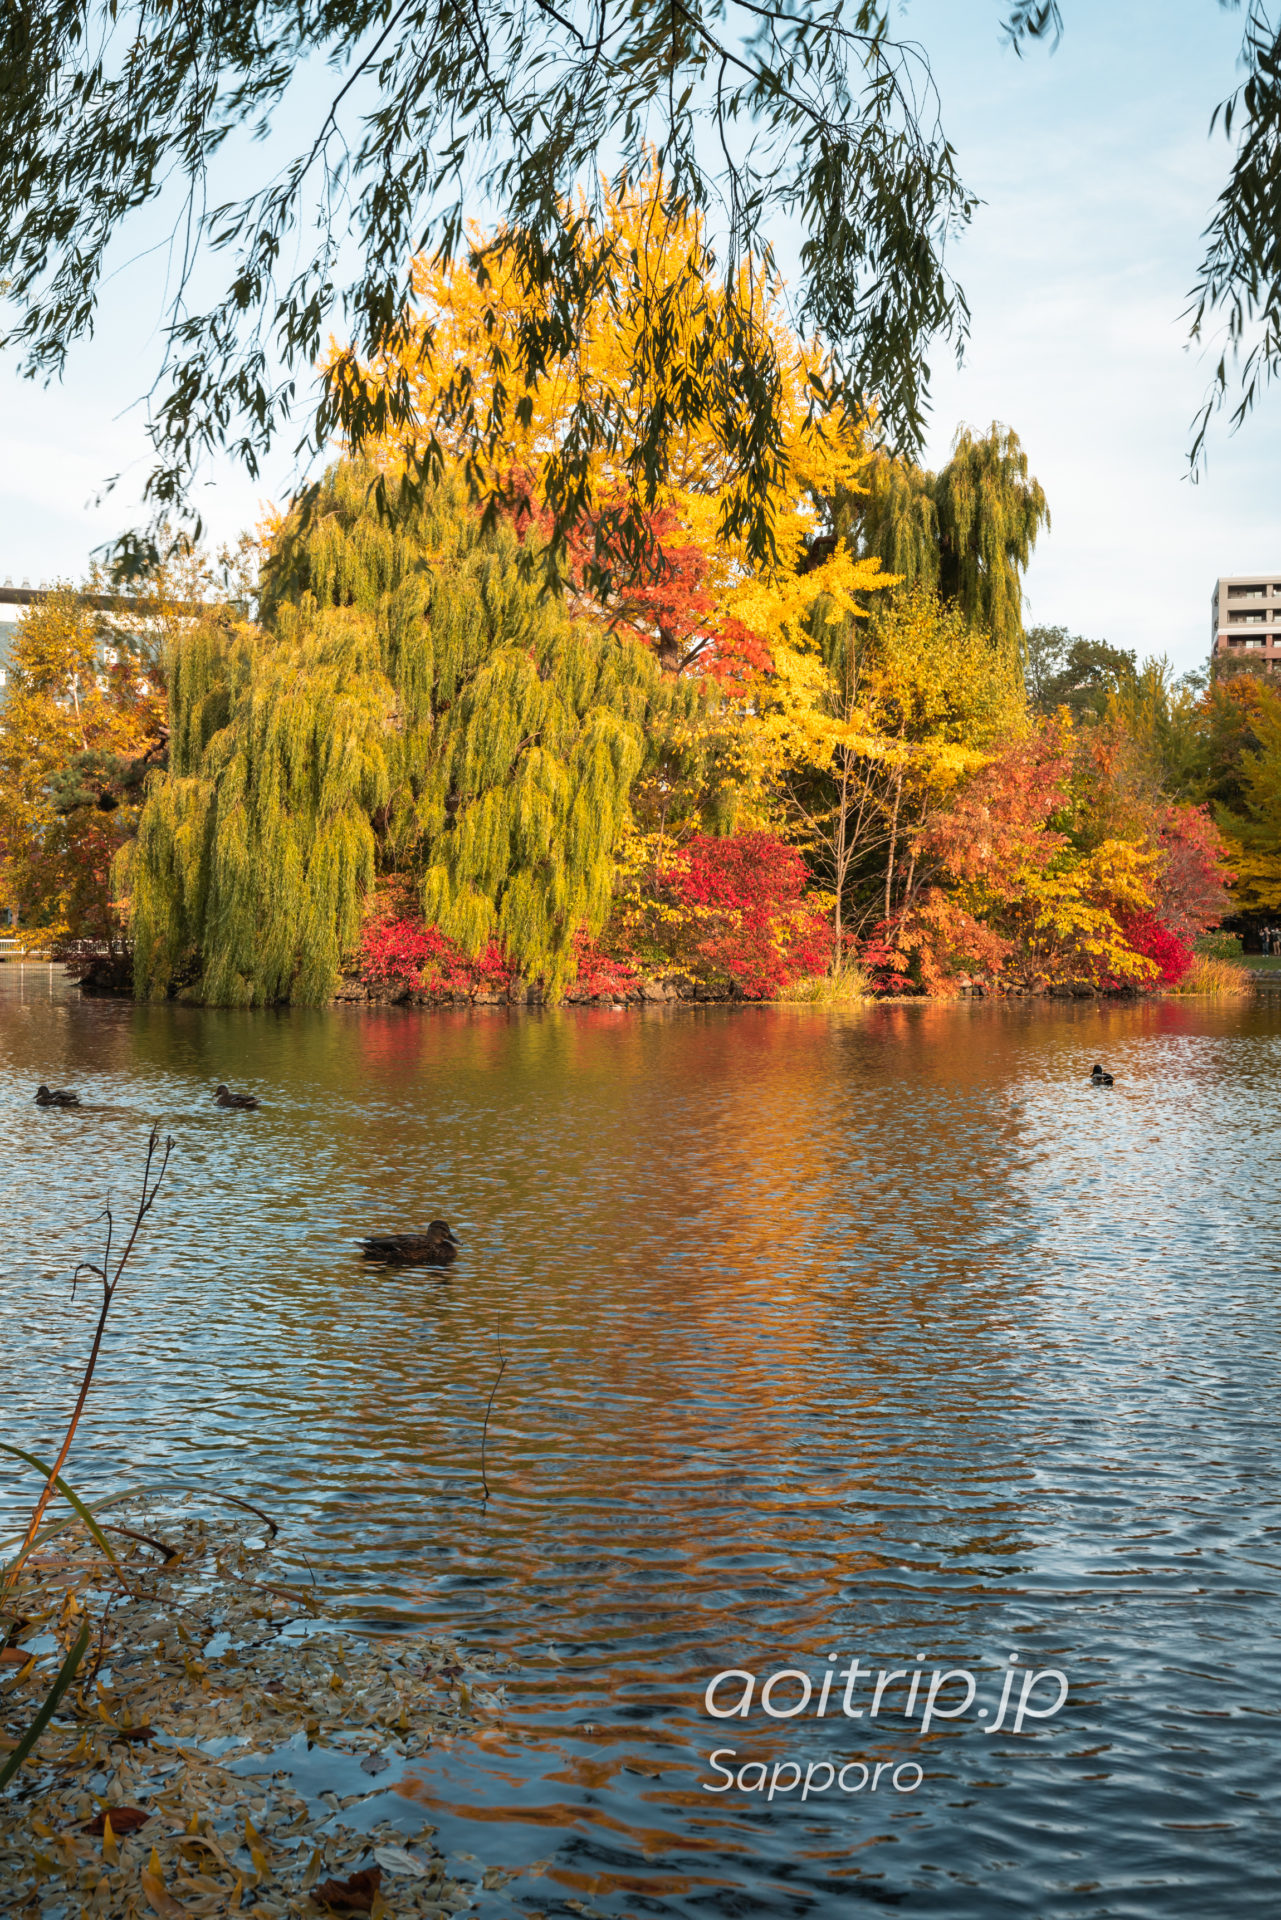 札幌の中島公園 菖蒲池の紅葉